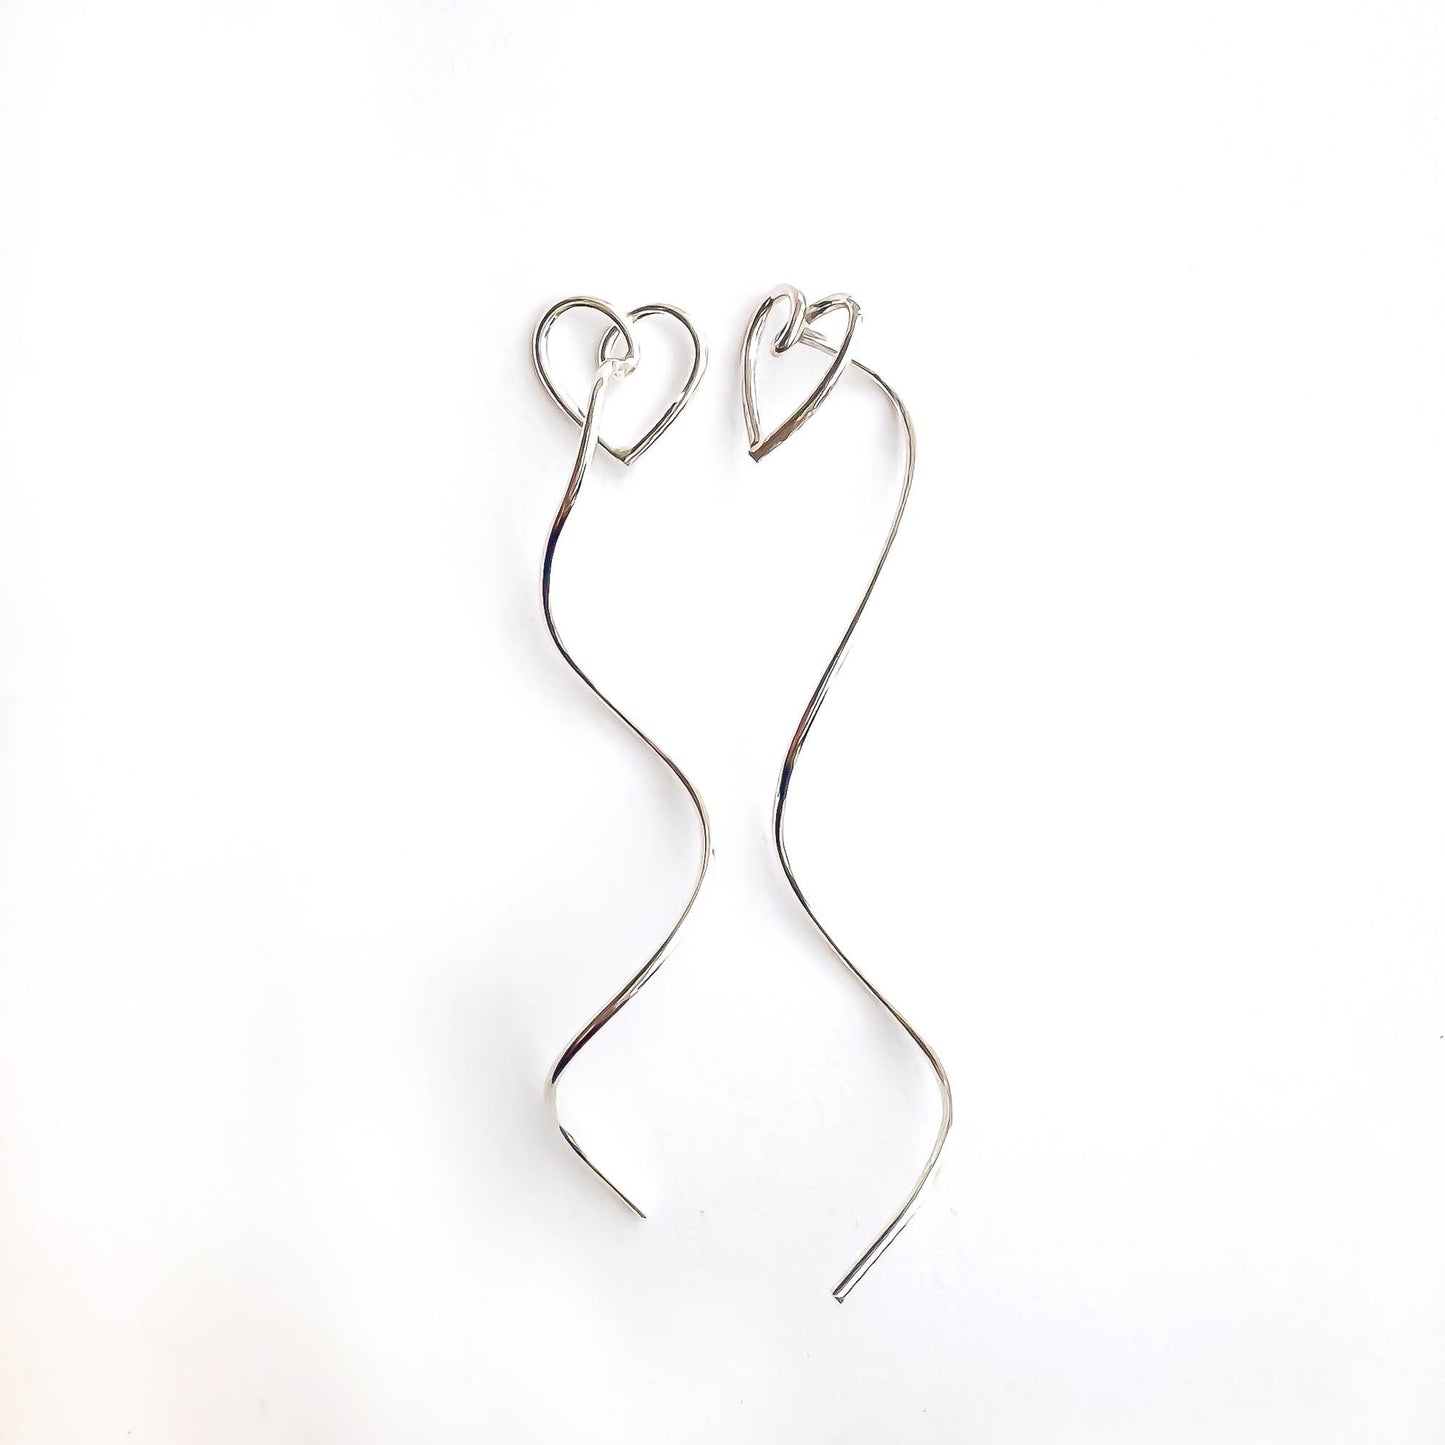 Heart Spiral Threader Earrings, Sterling Silver